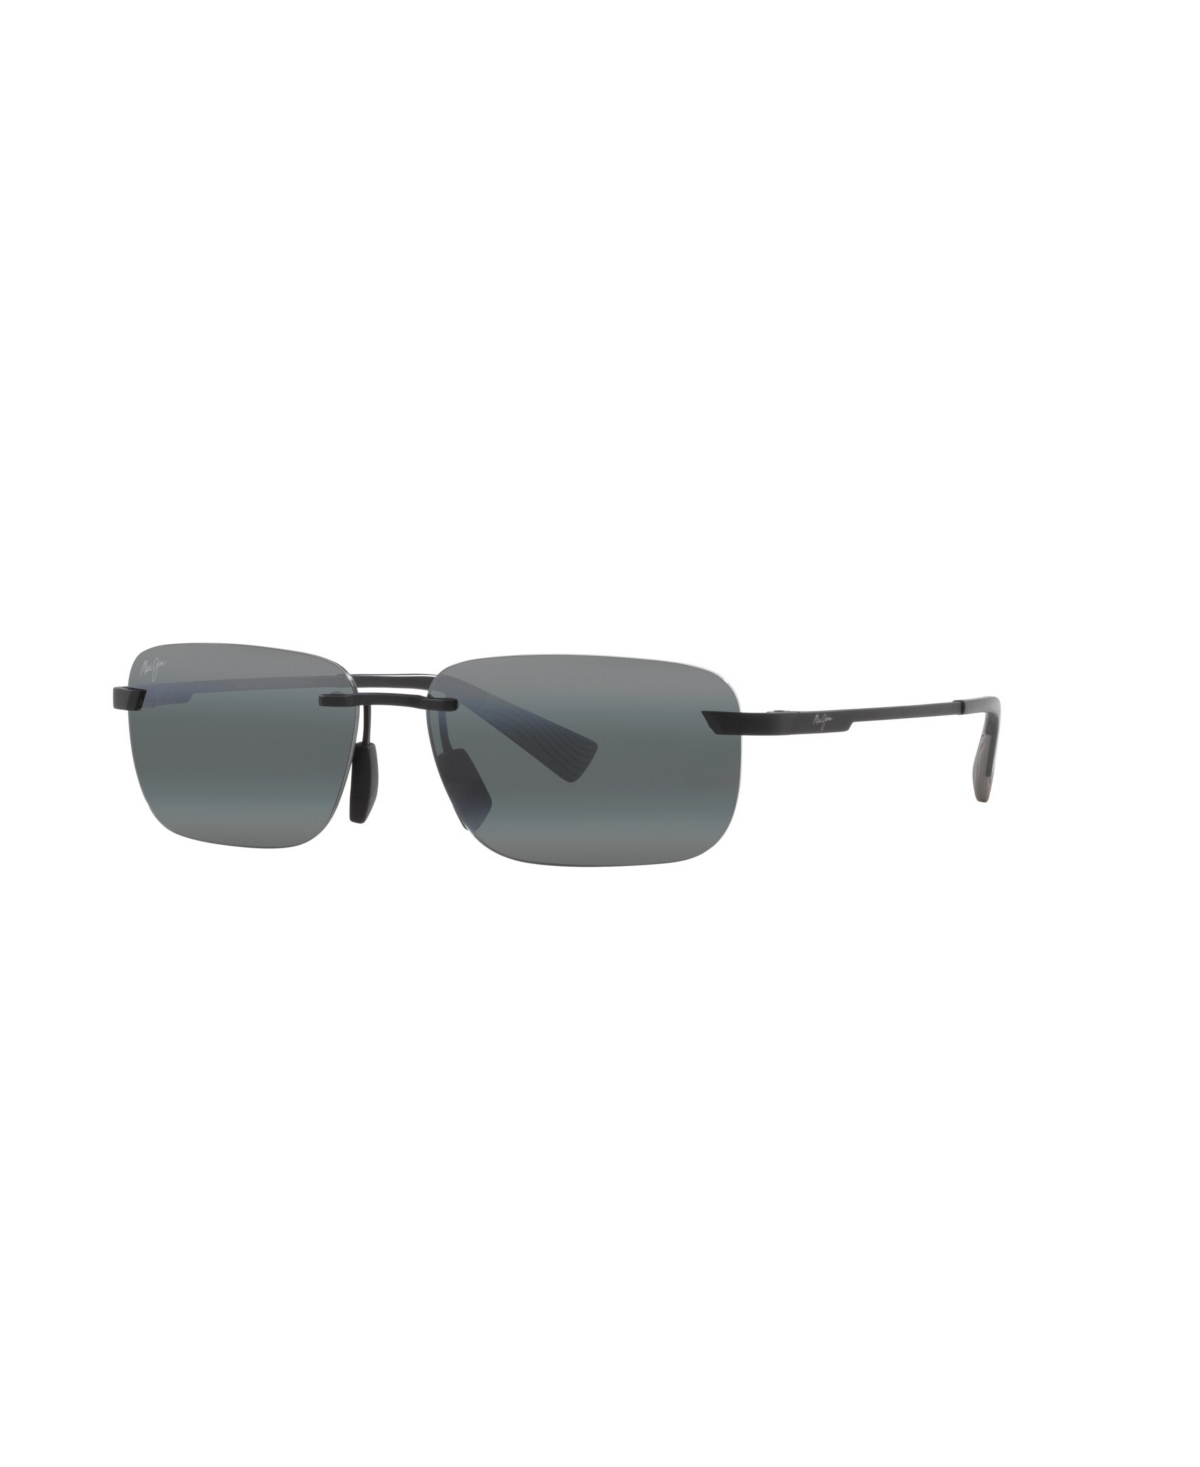 Men's Polarized Sunglasses, Lanakila - Matte Black